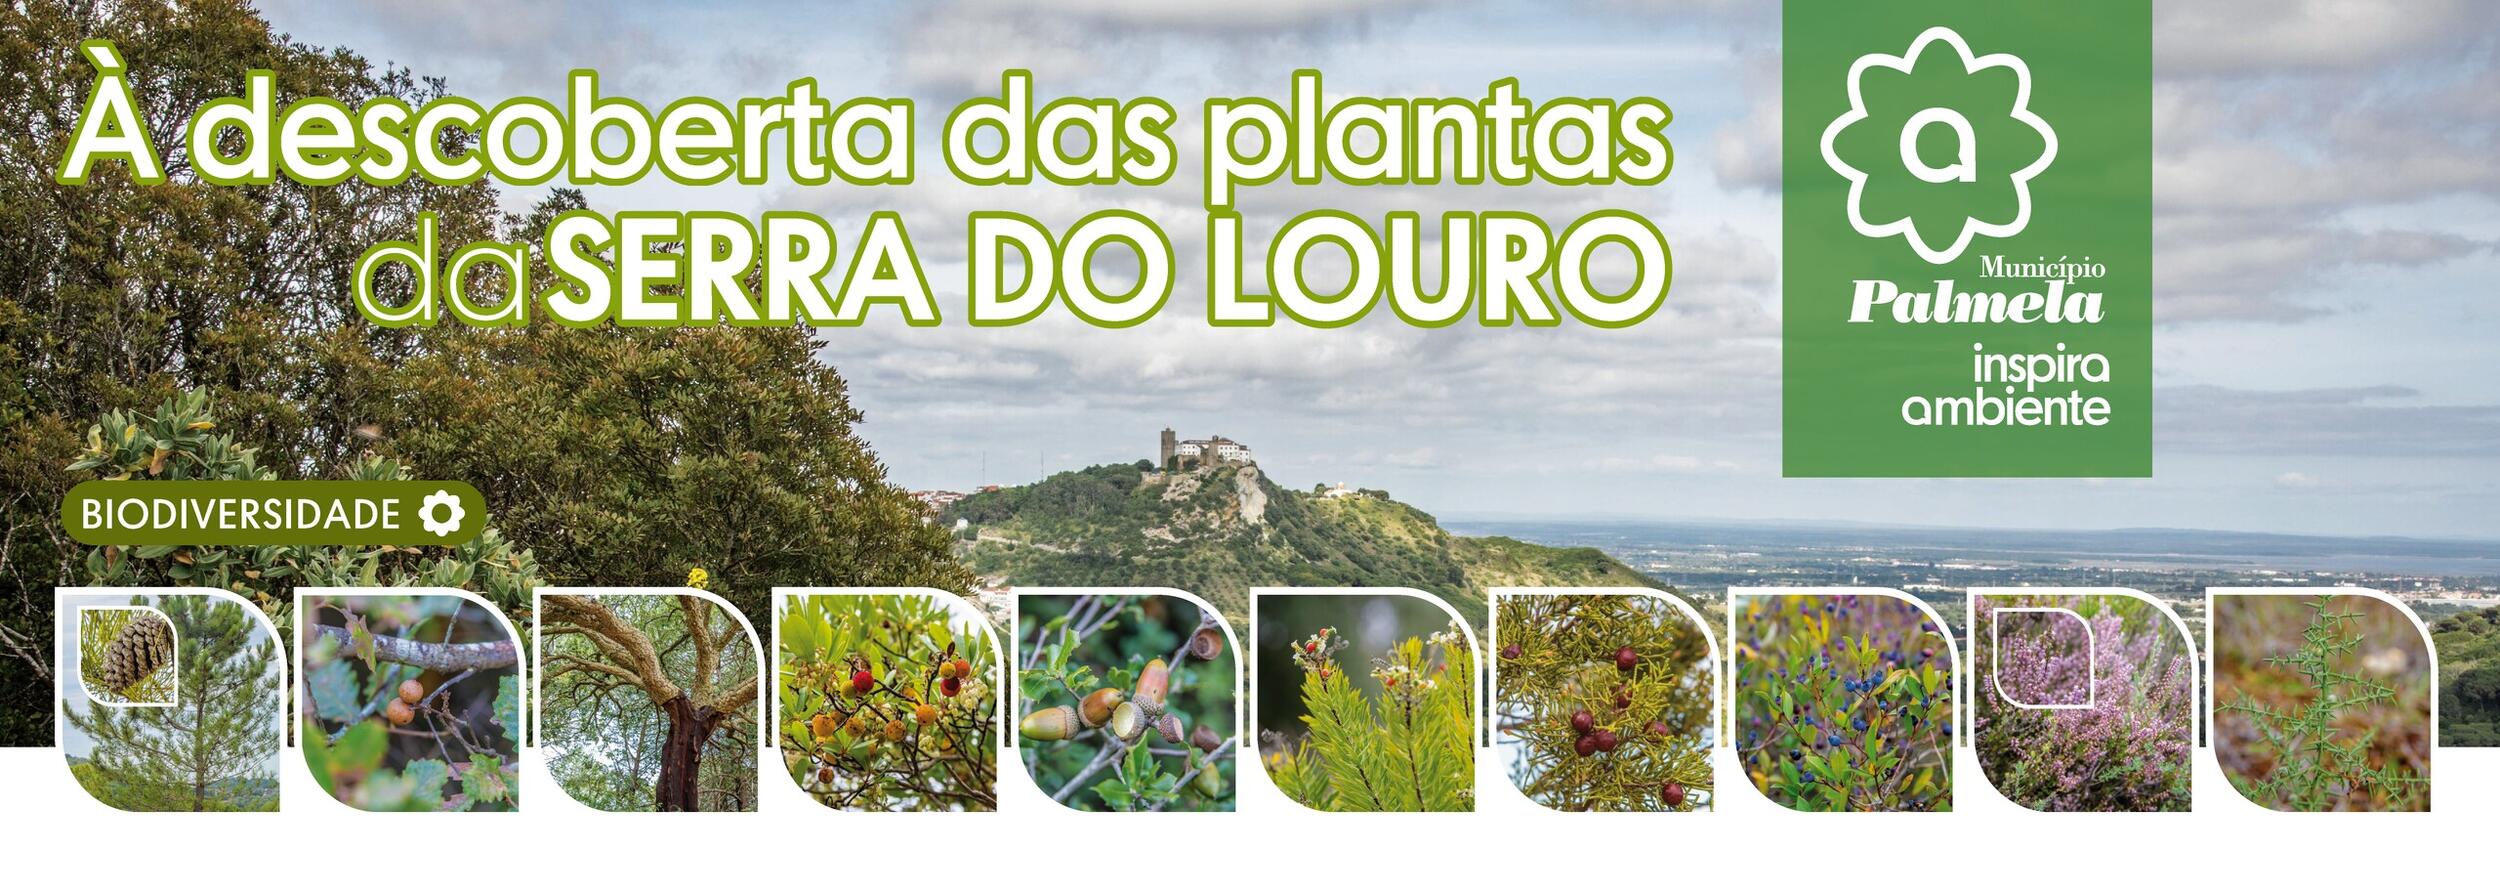 Serra do Louro: Consulte o Folheto e venha descobrir as plantas do outono!